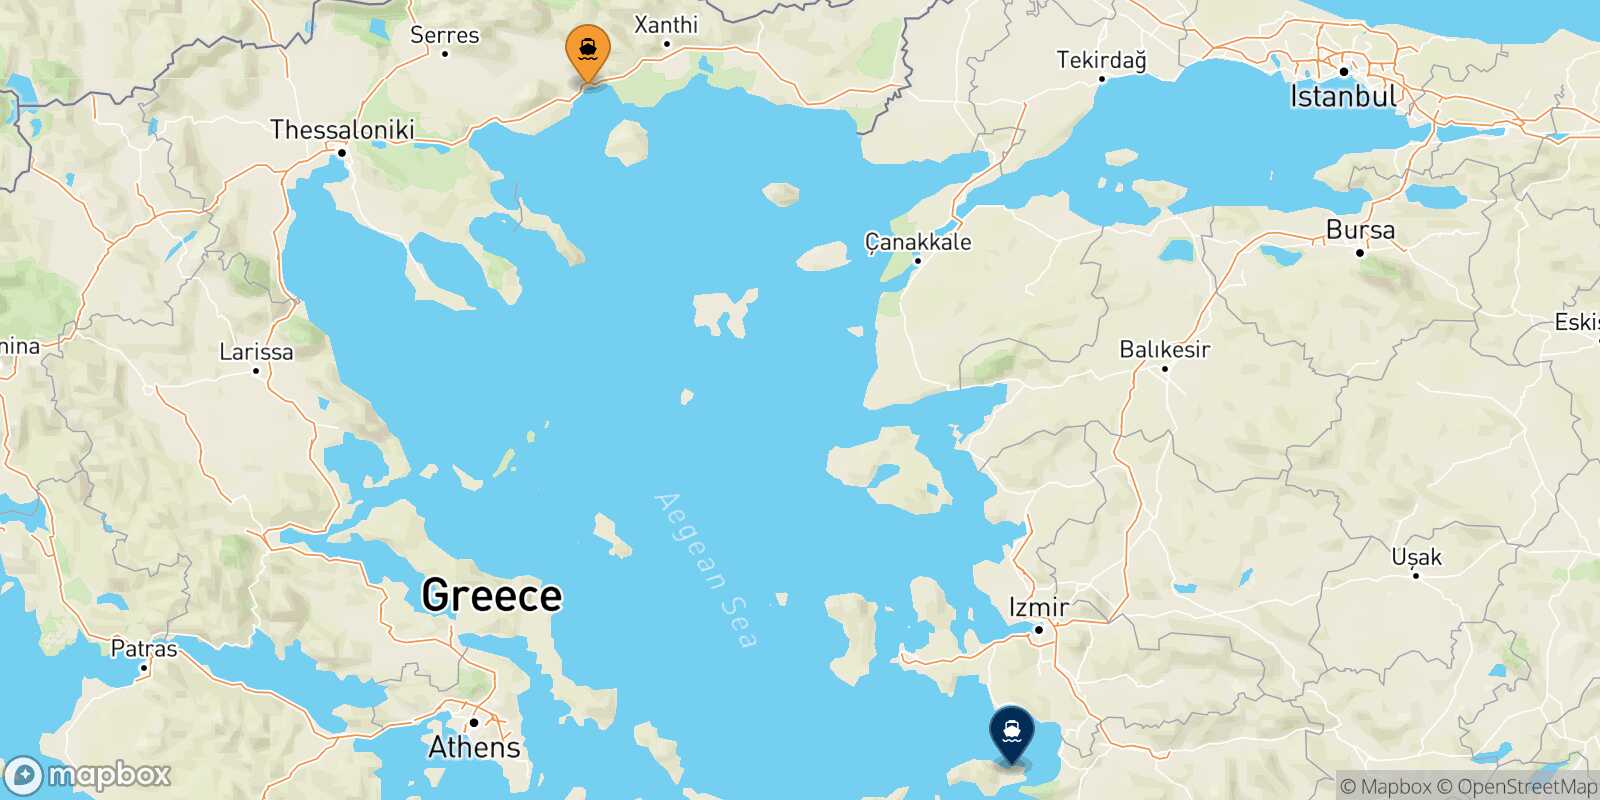 Kavala Vathi (Samos) route map